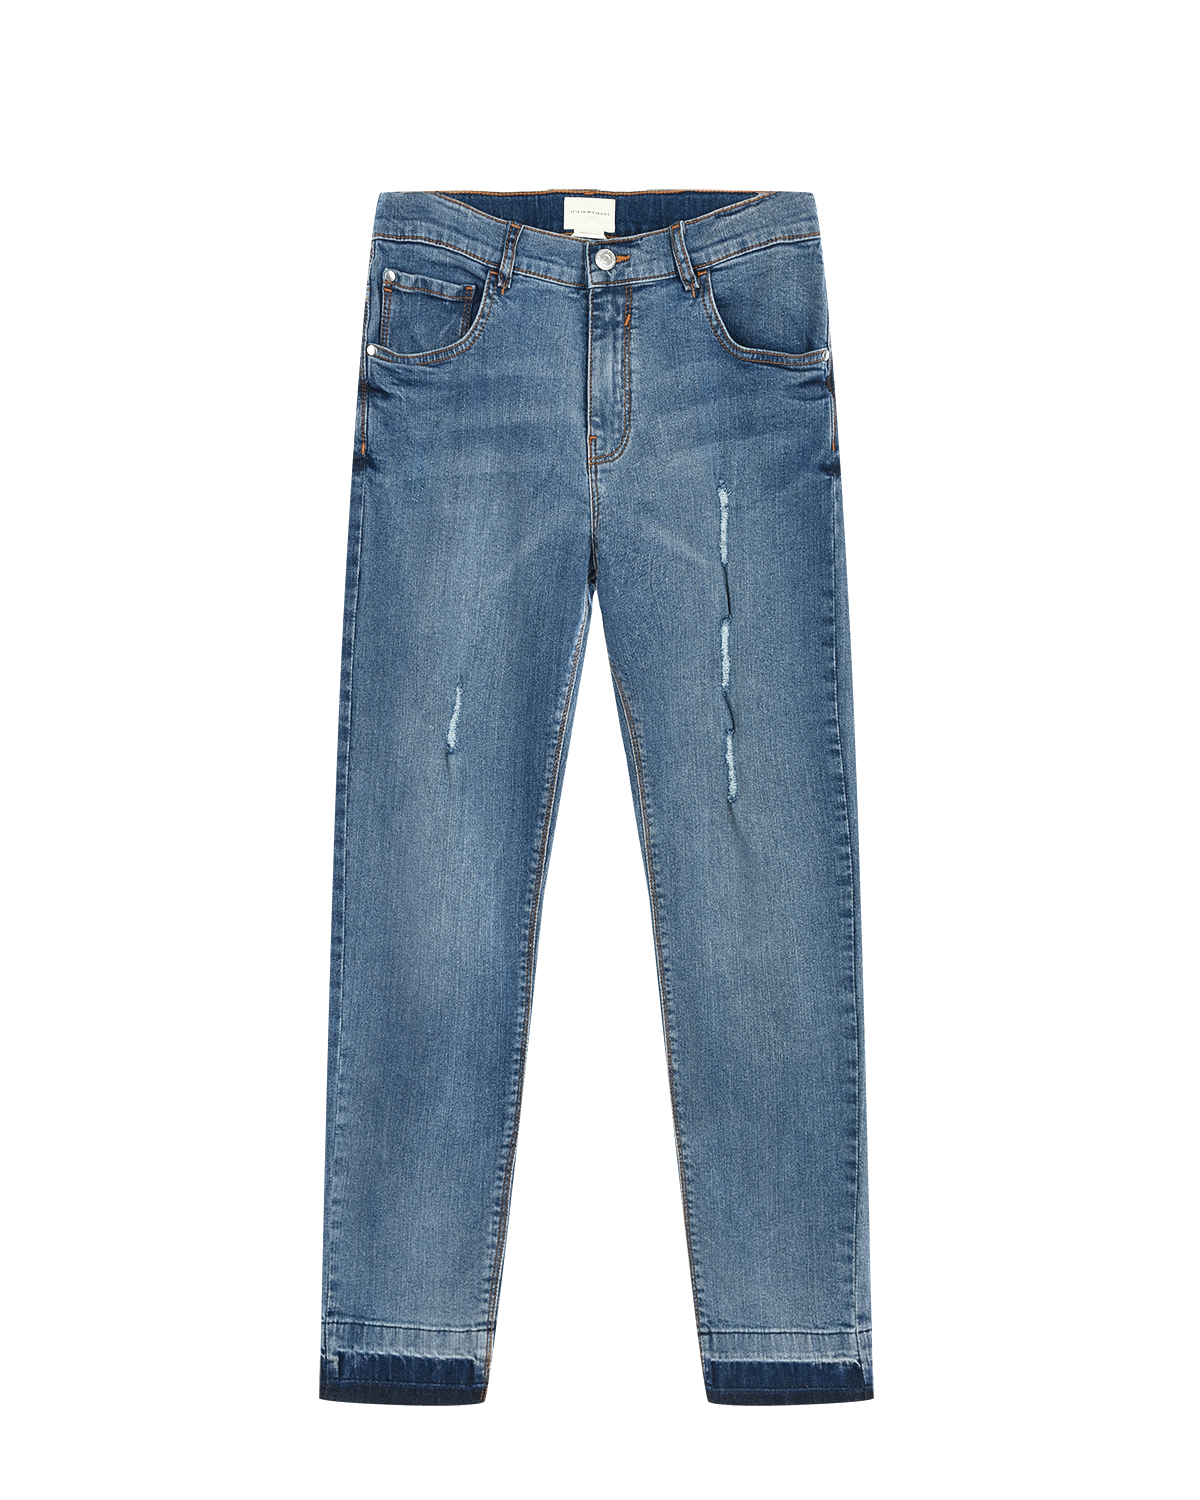 Джинсы с разрезами Its in my jeans детские, размер 176, цвет голубой - фото 1